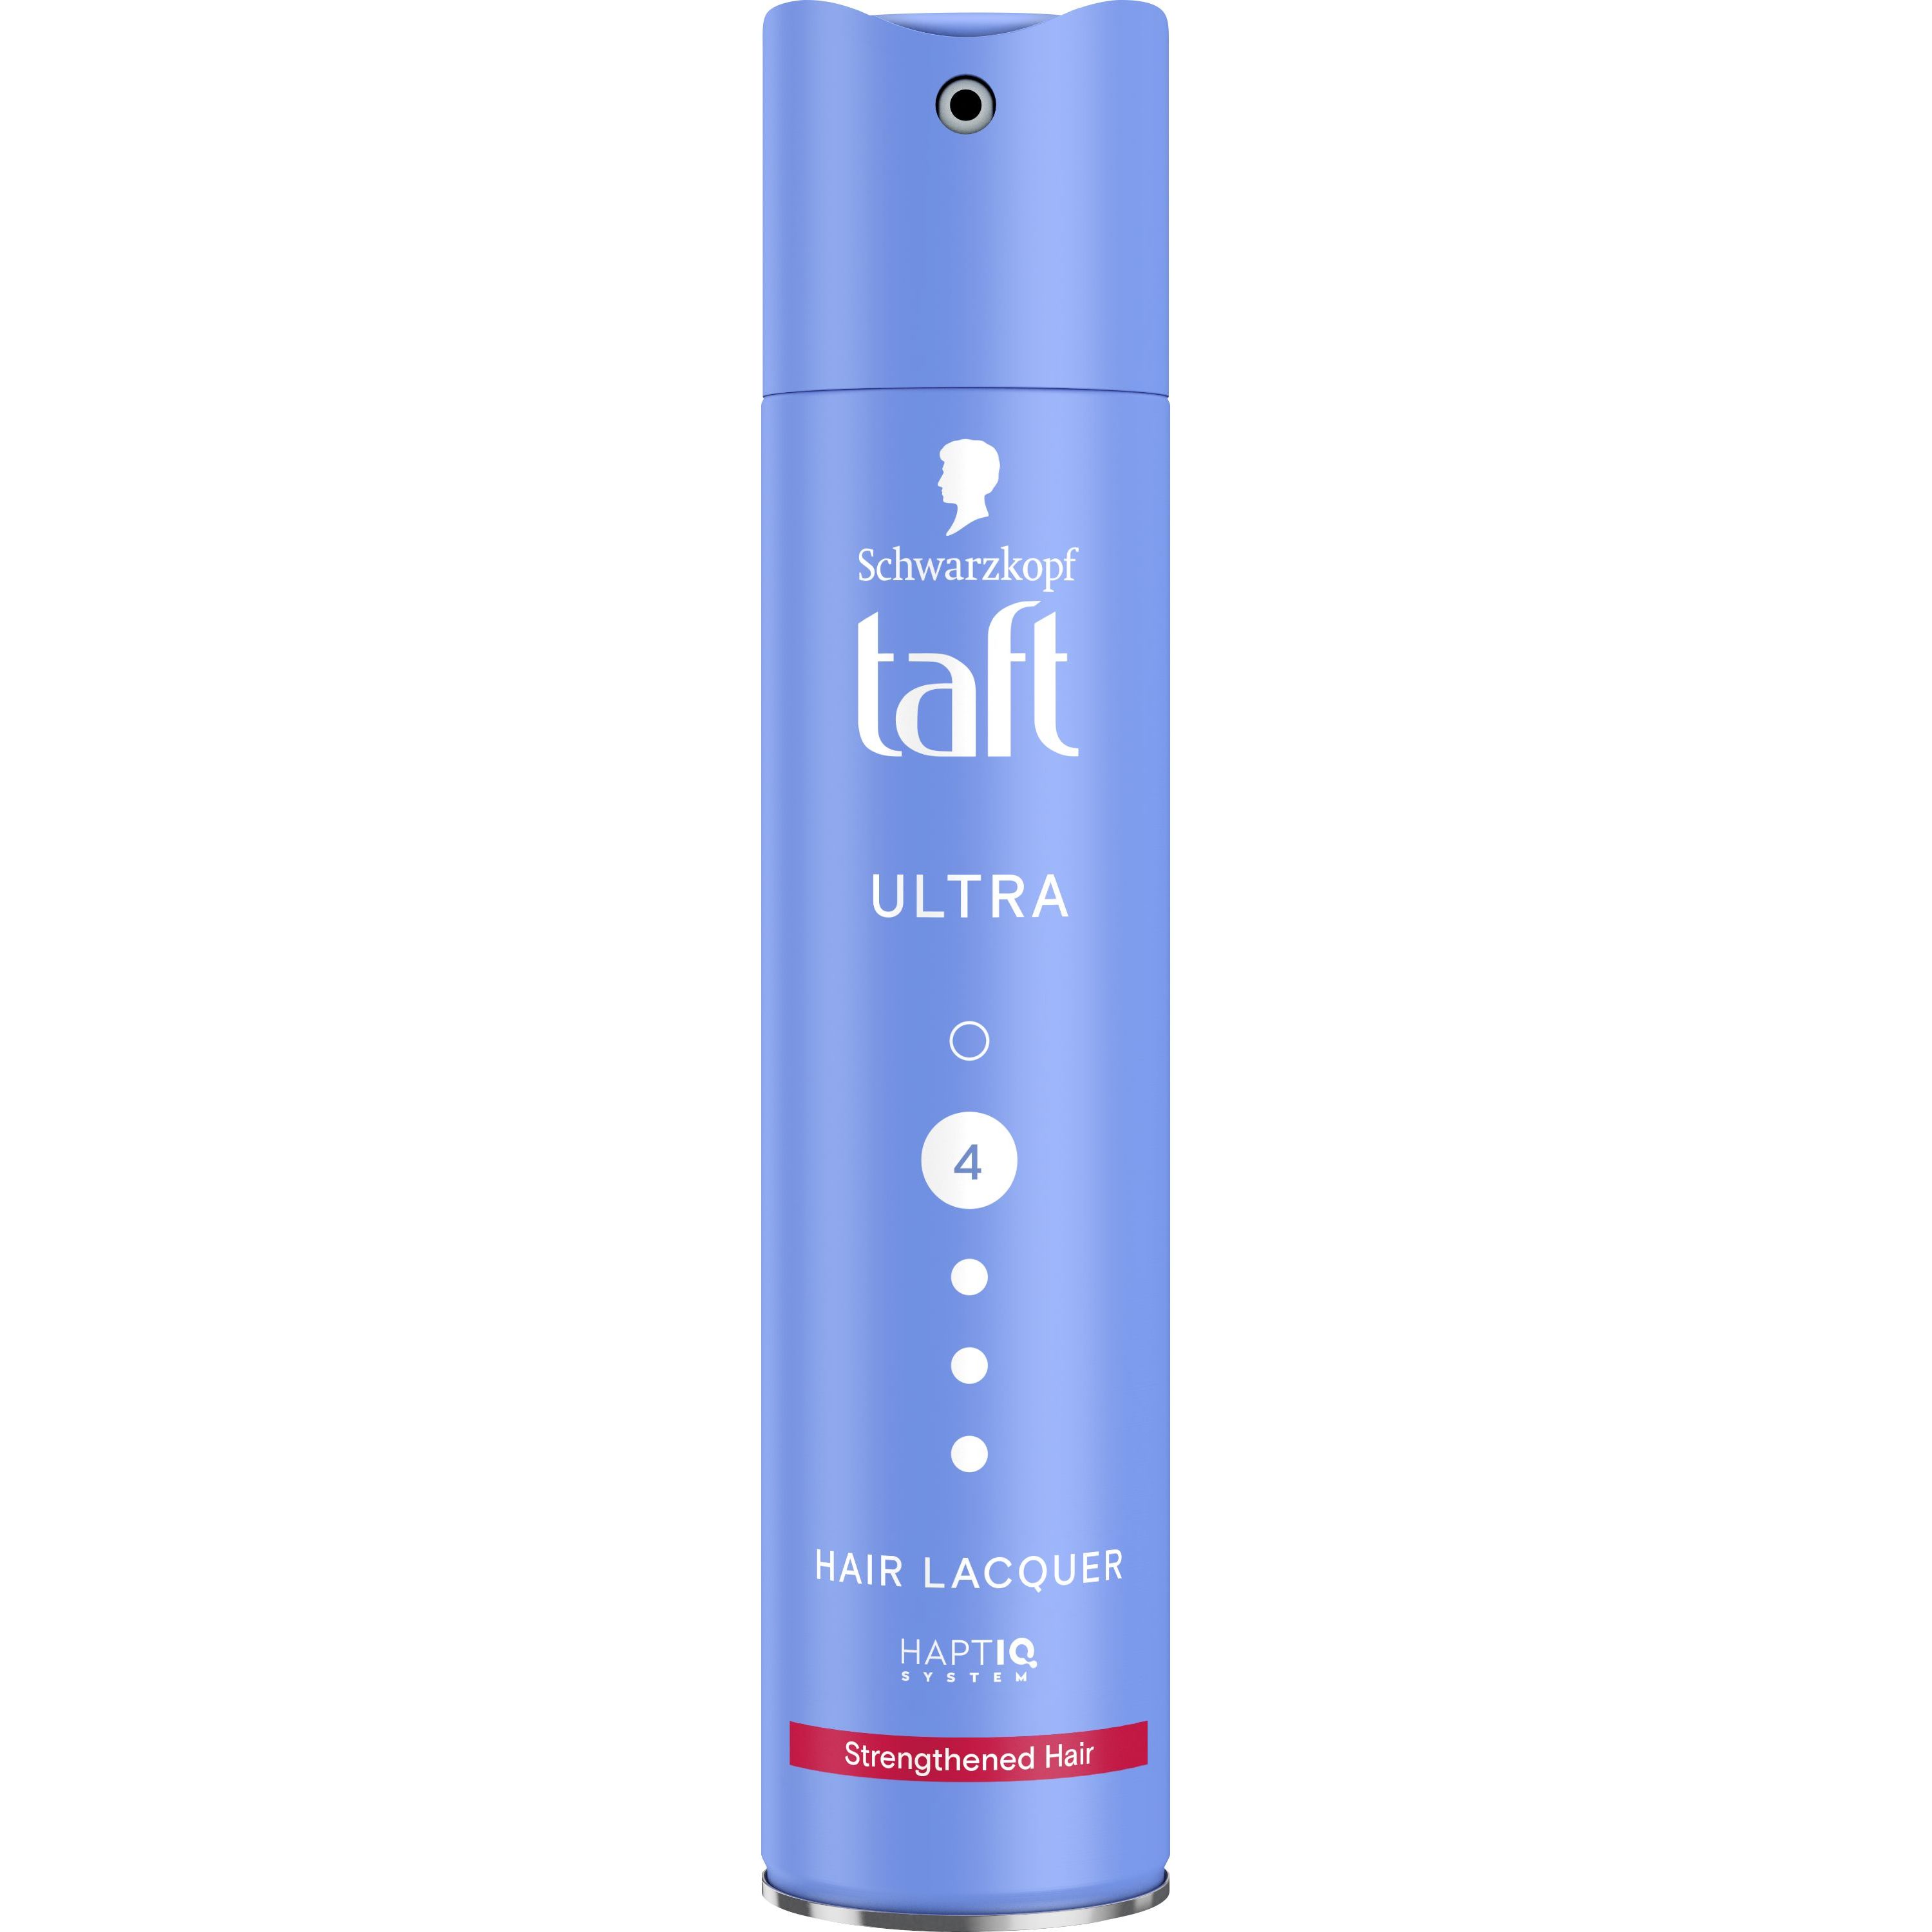 Лак Taft Ultra 4 для укрепления волос 250 мл - фото 1